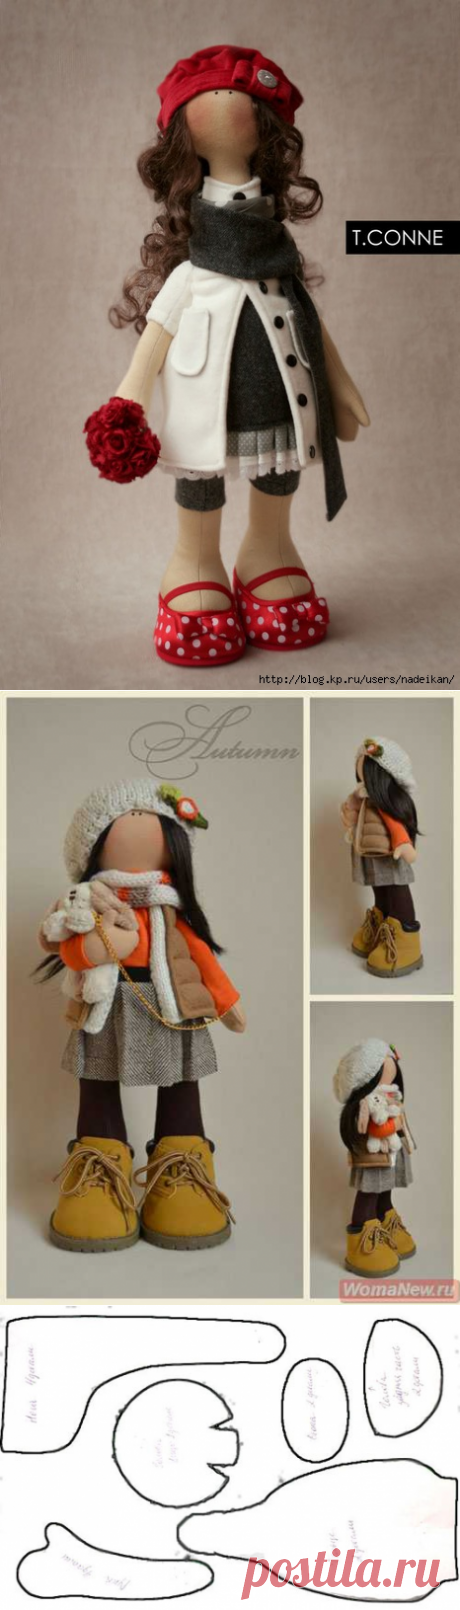 Куклы российского дизайнера Татьяны Коннэ (выкройка и МК)